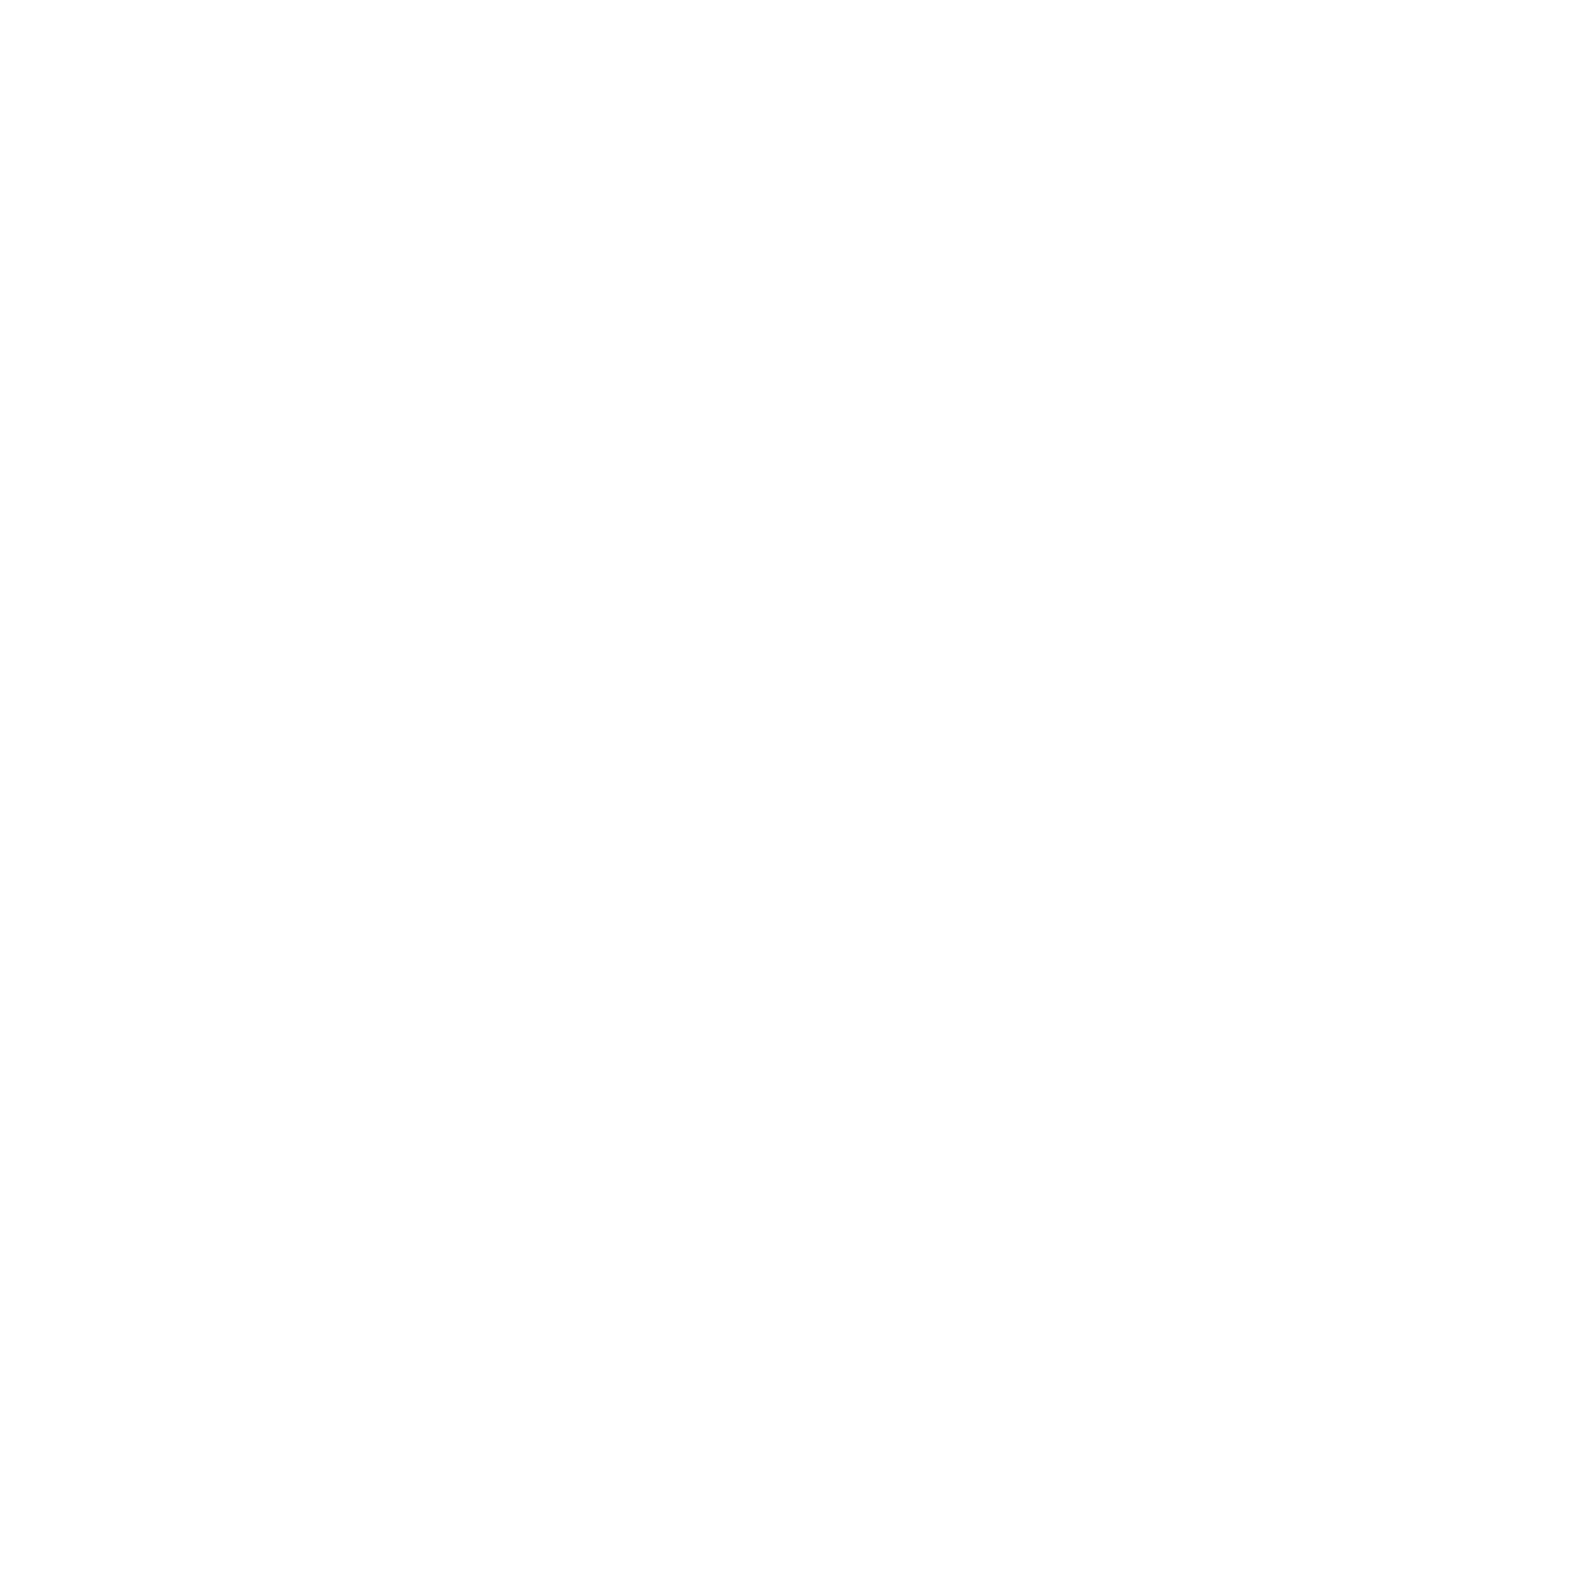 Enovis logo for dark backgrounds (transparent PNG)